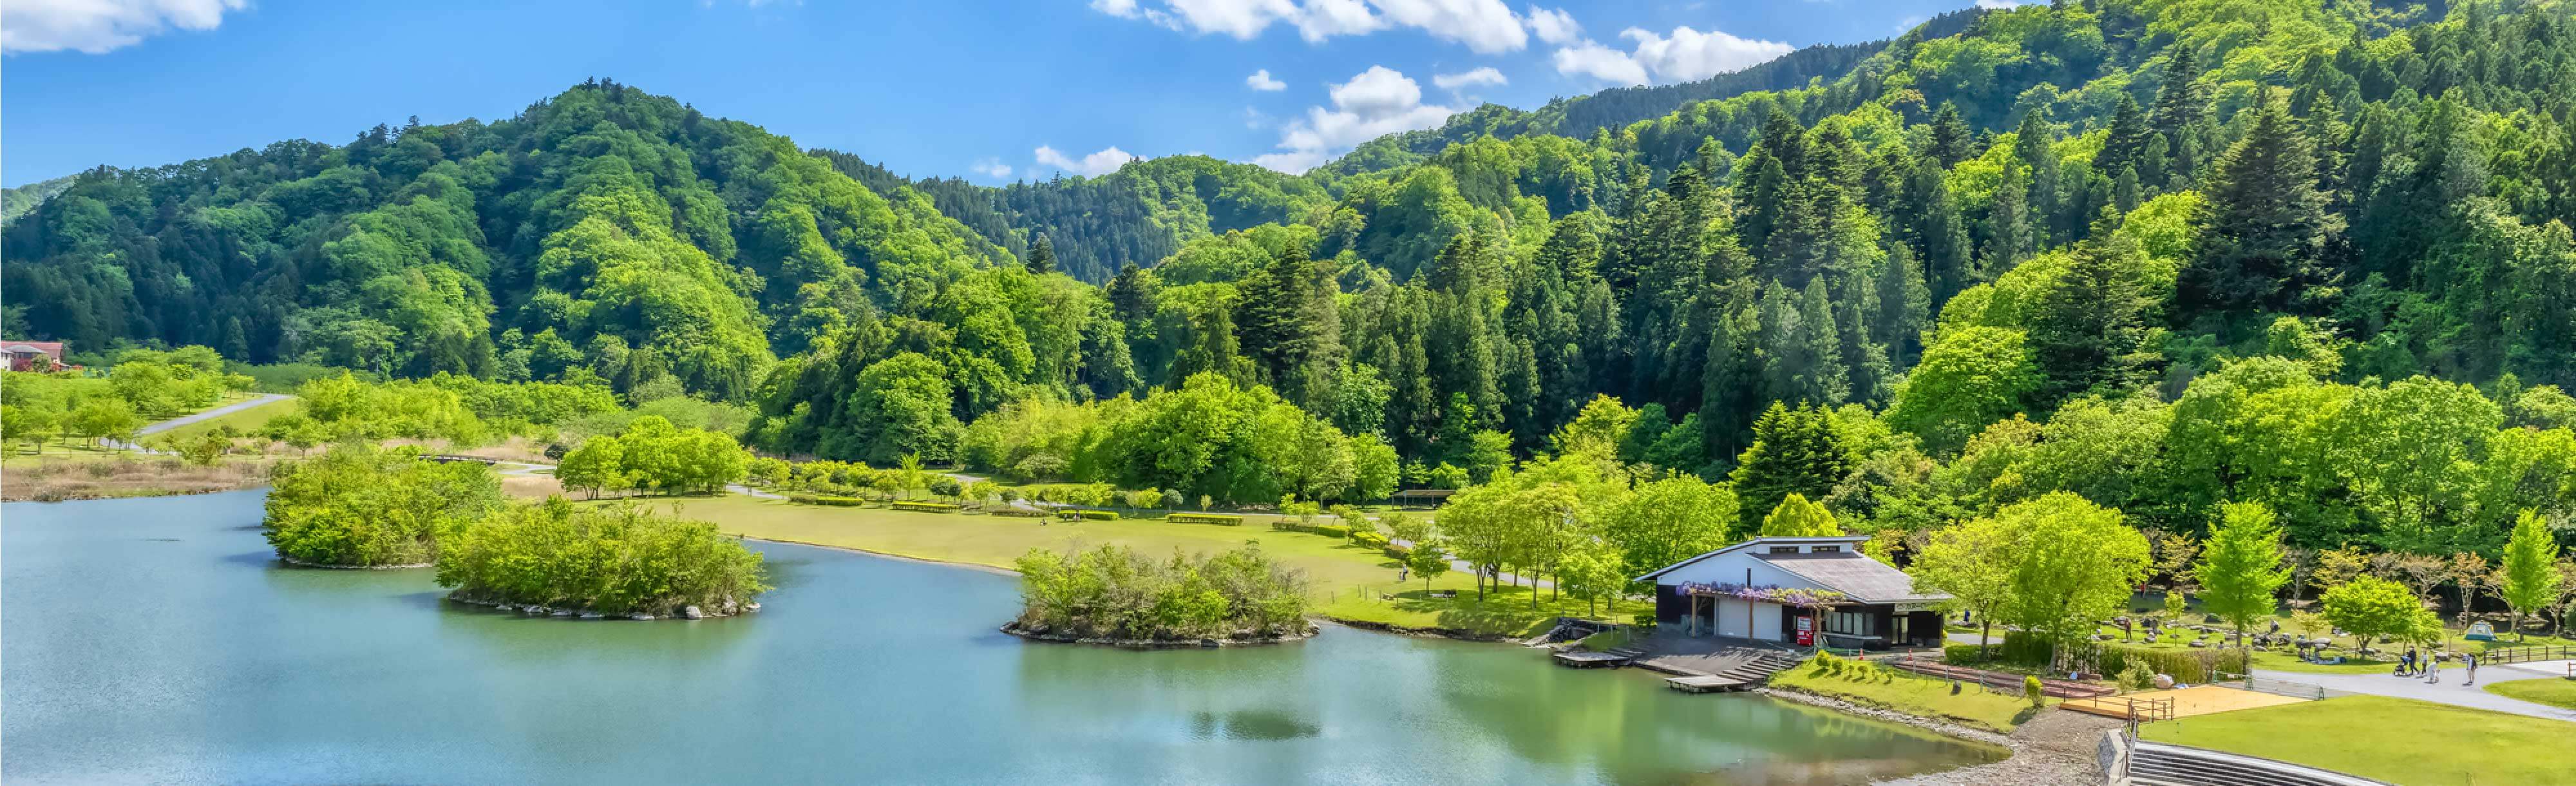 愛川の自然あふれる風景